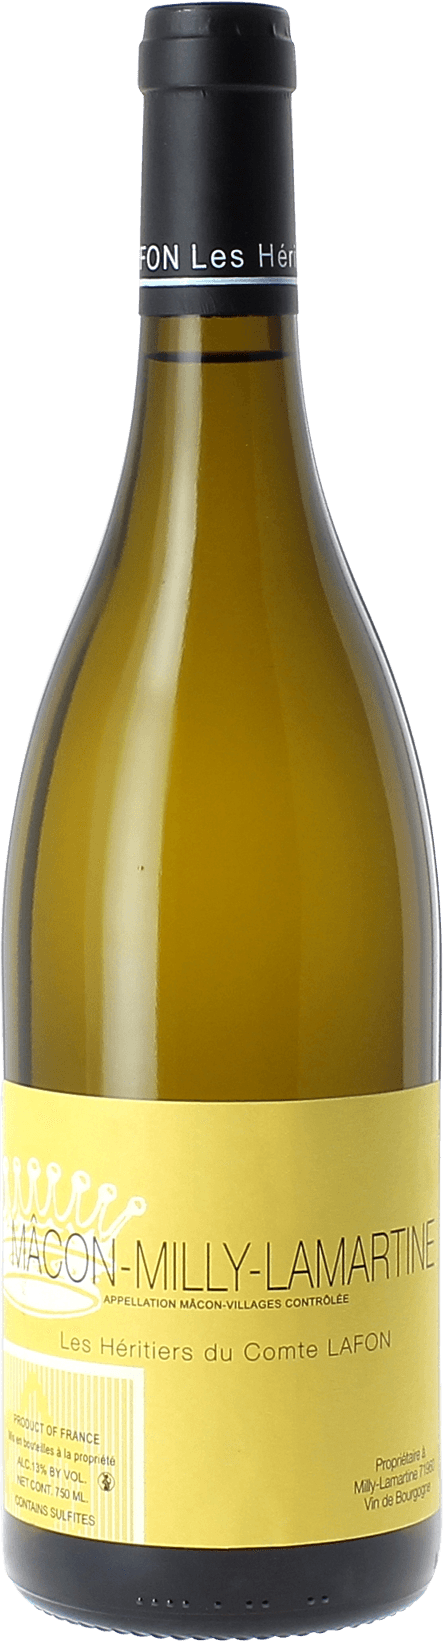 Macon milly lamartine 2017 Domaine Les Hritiers du Comte Lafon, Bourgogne blanc